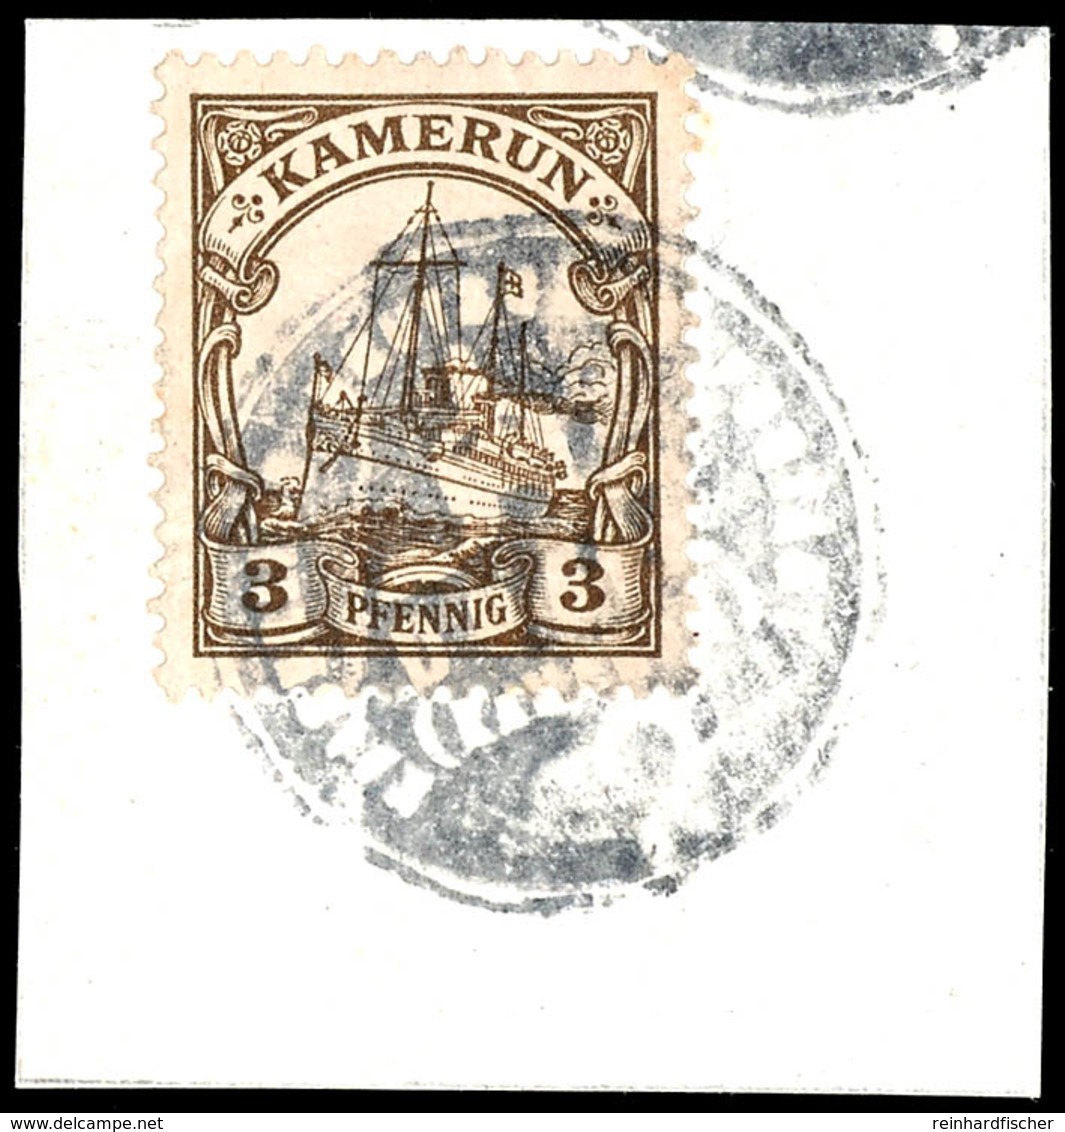 3 Und 40 Pfennig Auf 5 Tadellosen Briefstücken Mit Verschiedenen Postagentur-Dienstsiegeln Entwertet, Selten, Katalog: 7 - Kameroen